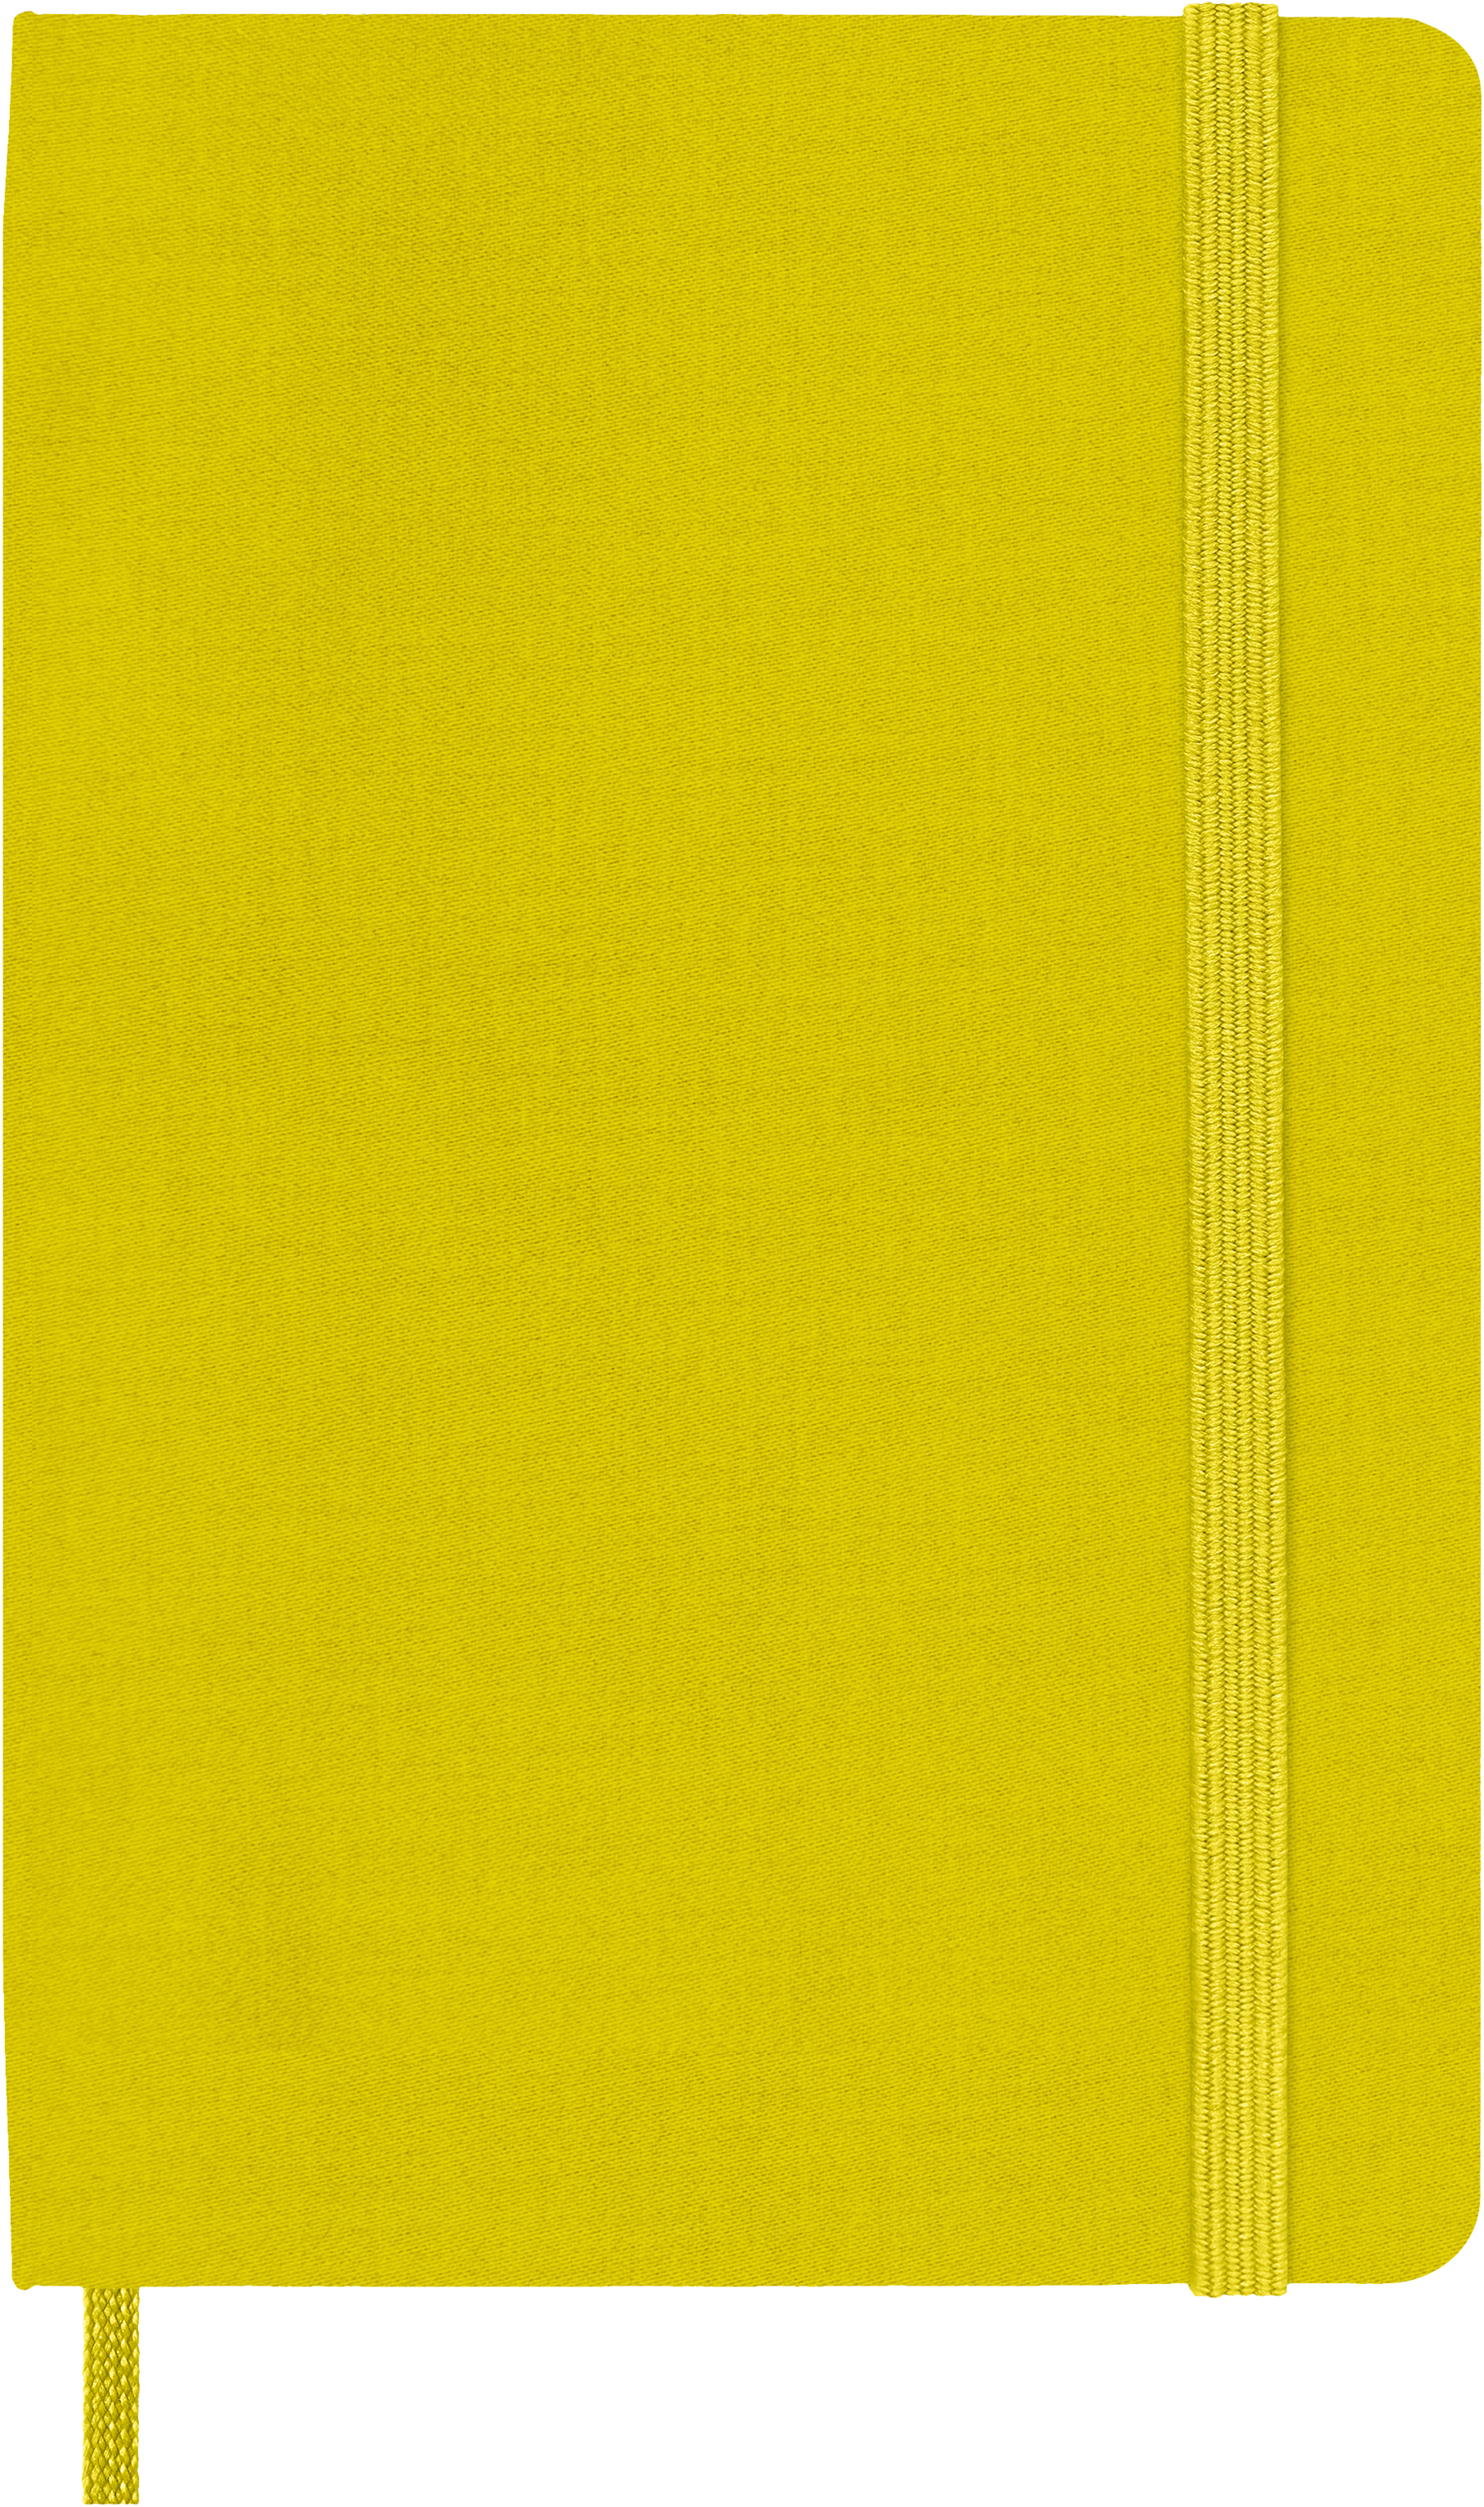 MOLESKINE Carnet Color 9x14cm 56598853032 jaune, ligné, 240 page, HC